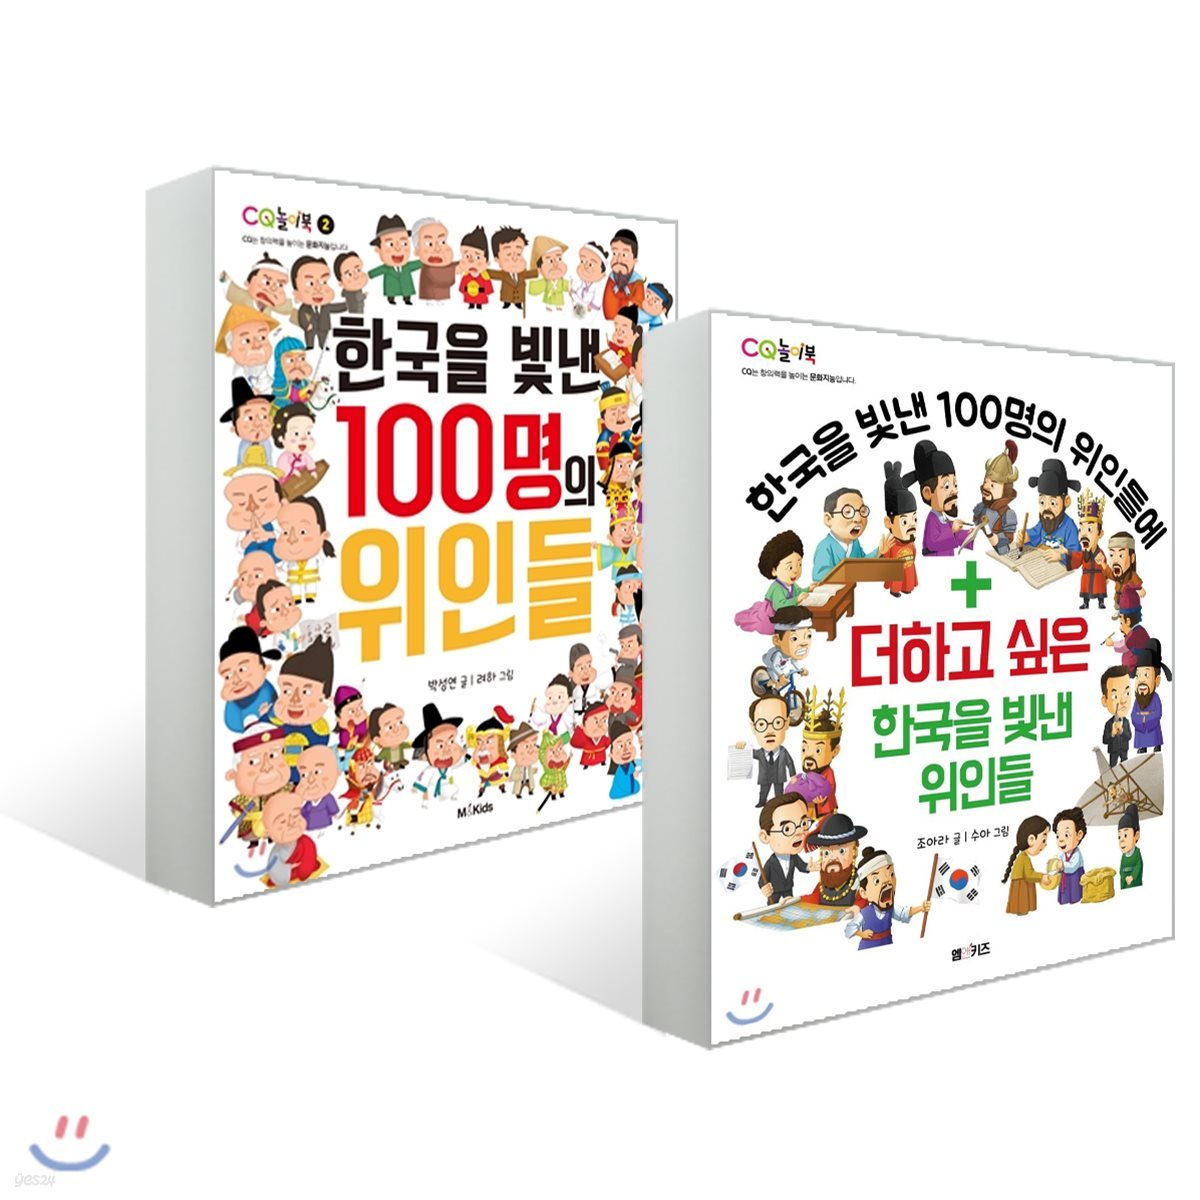 한국을 빛낸 100명의 위인들 + 더하고 싶은 한국을 빛낸 위인들 세트